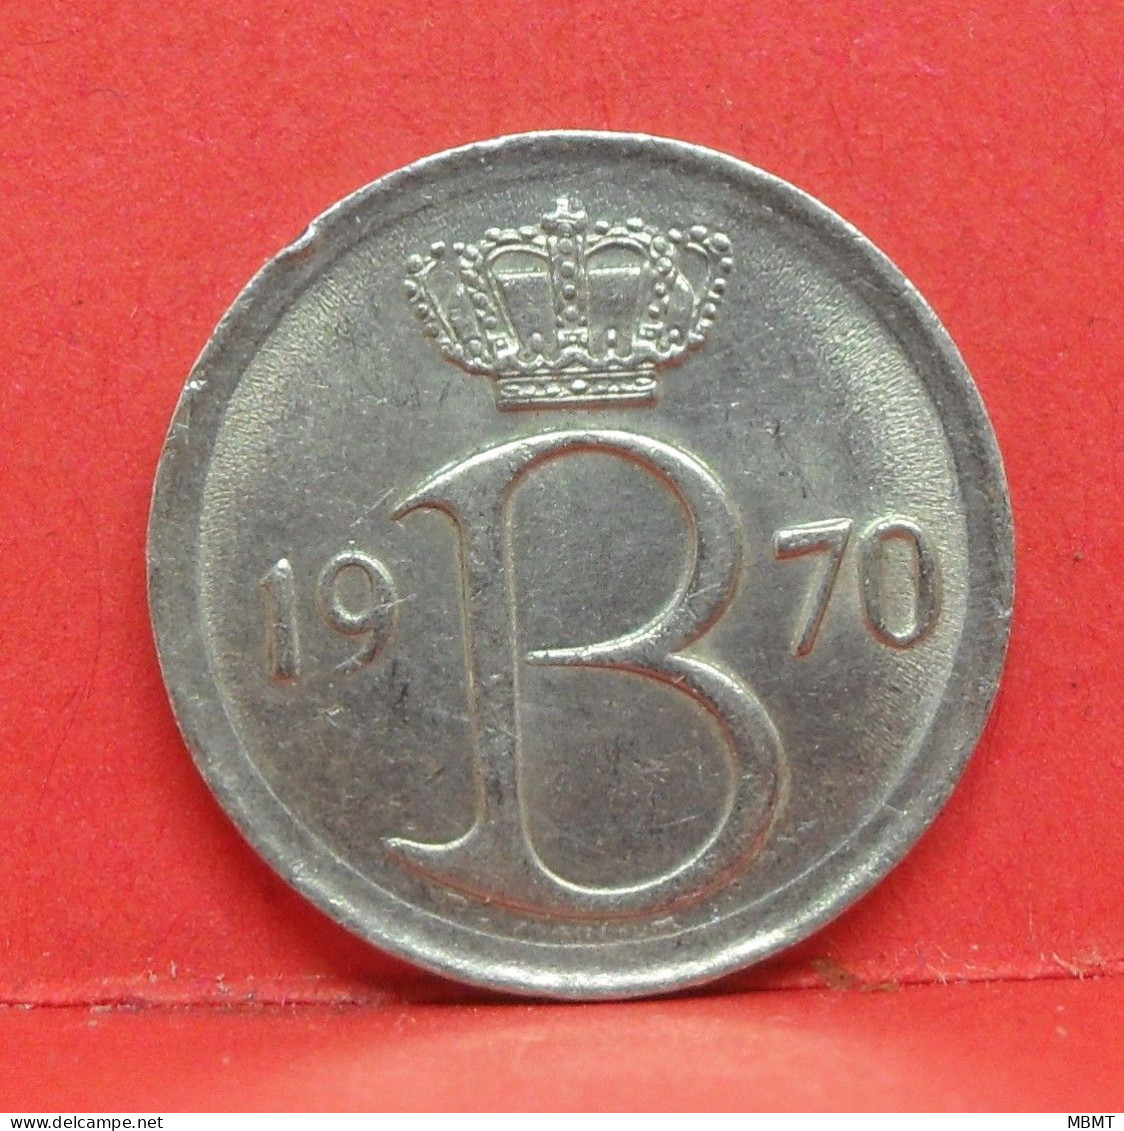 25 Centimes 1970 - TTB - Pièce Monnaie Belgique - Article N°1687 - 25 Centimes